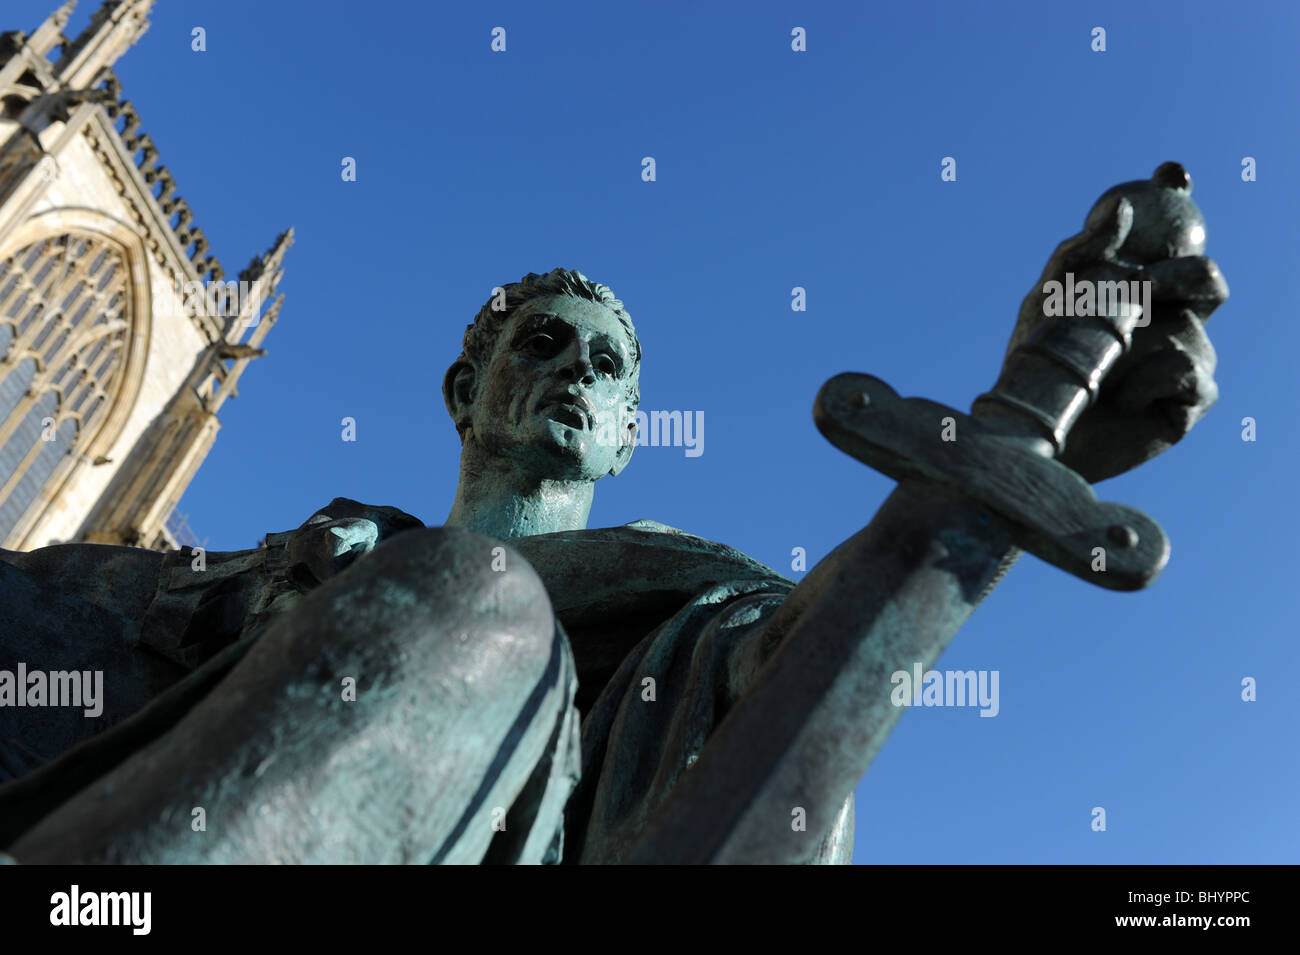 Statue de Constantin le Grand à côté de la cathédrale de York Ville de York dans le North Yorkshire England Uk Banque D'Images